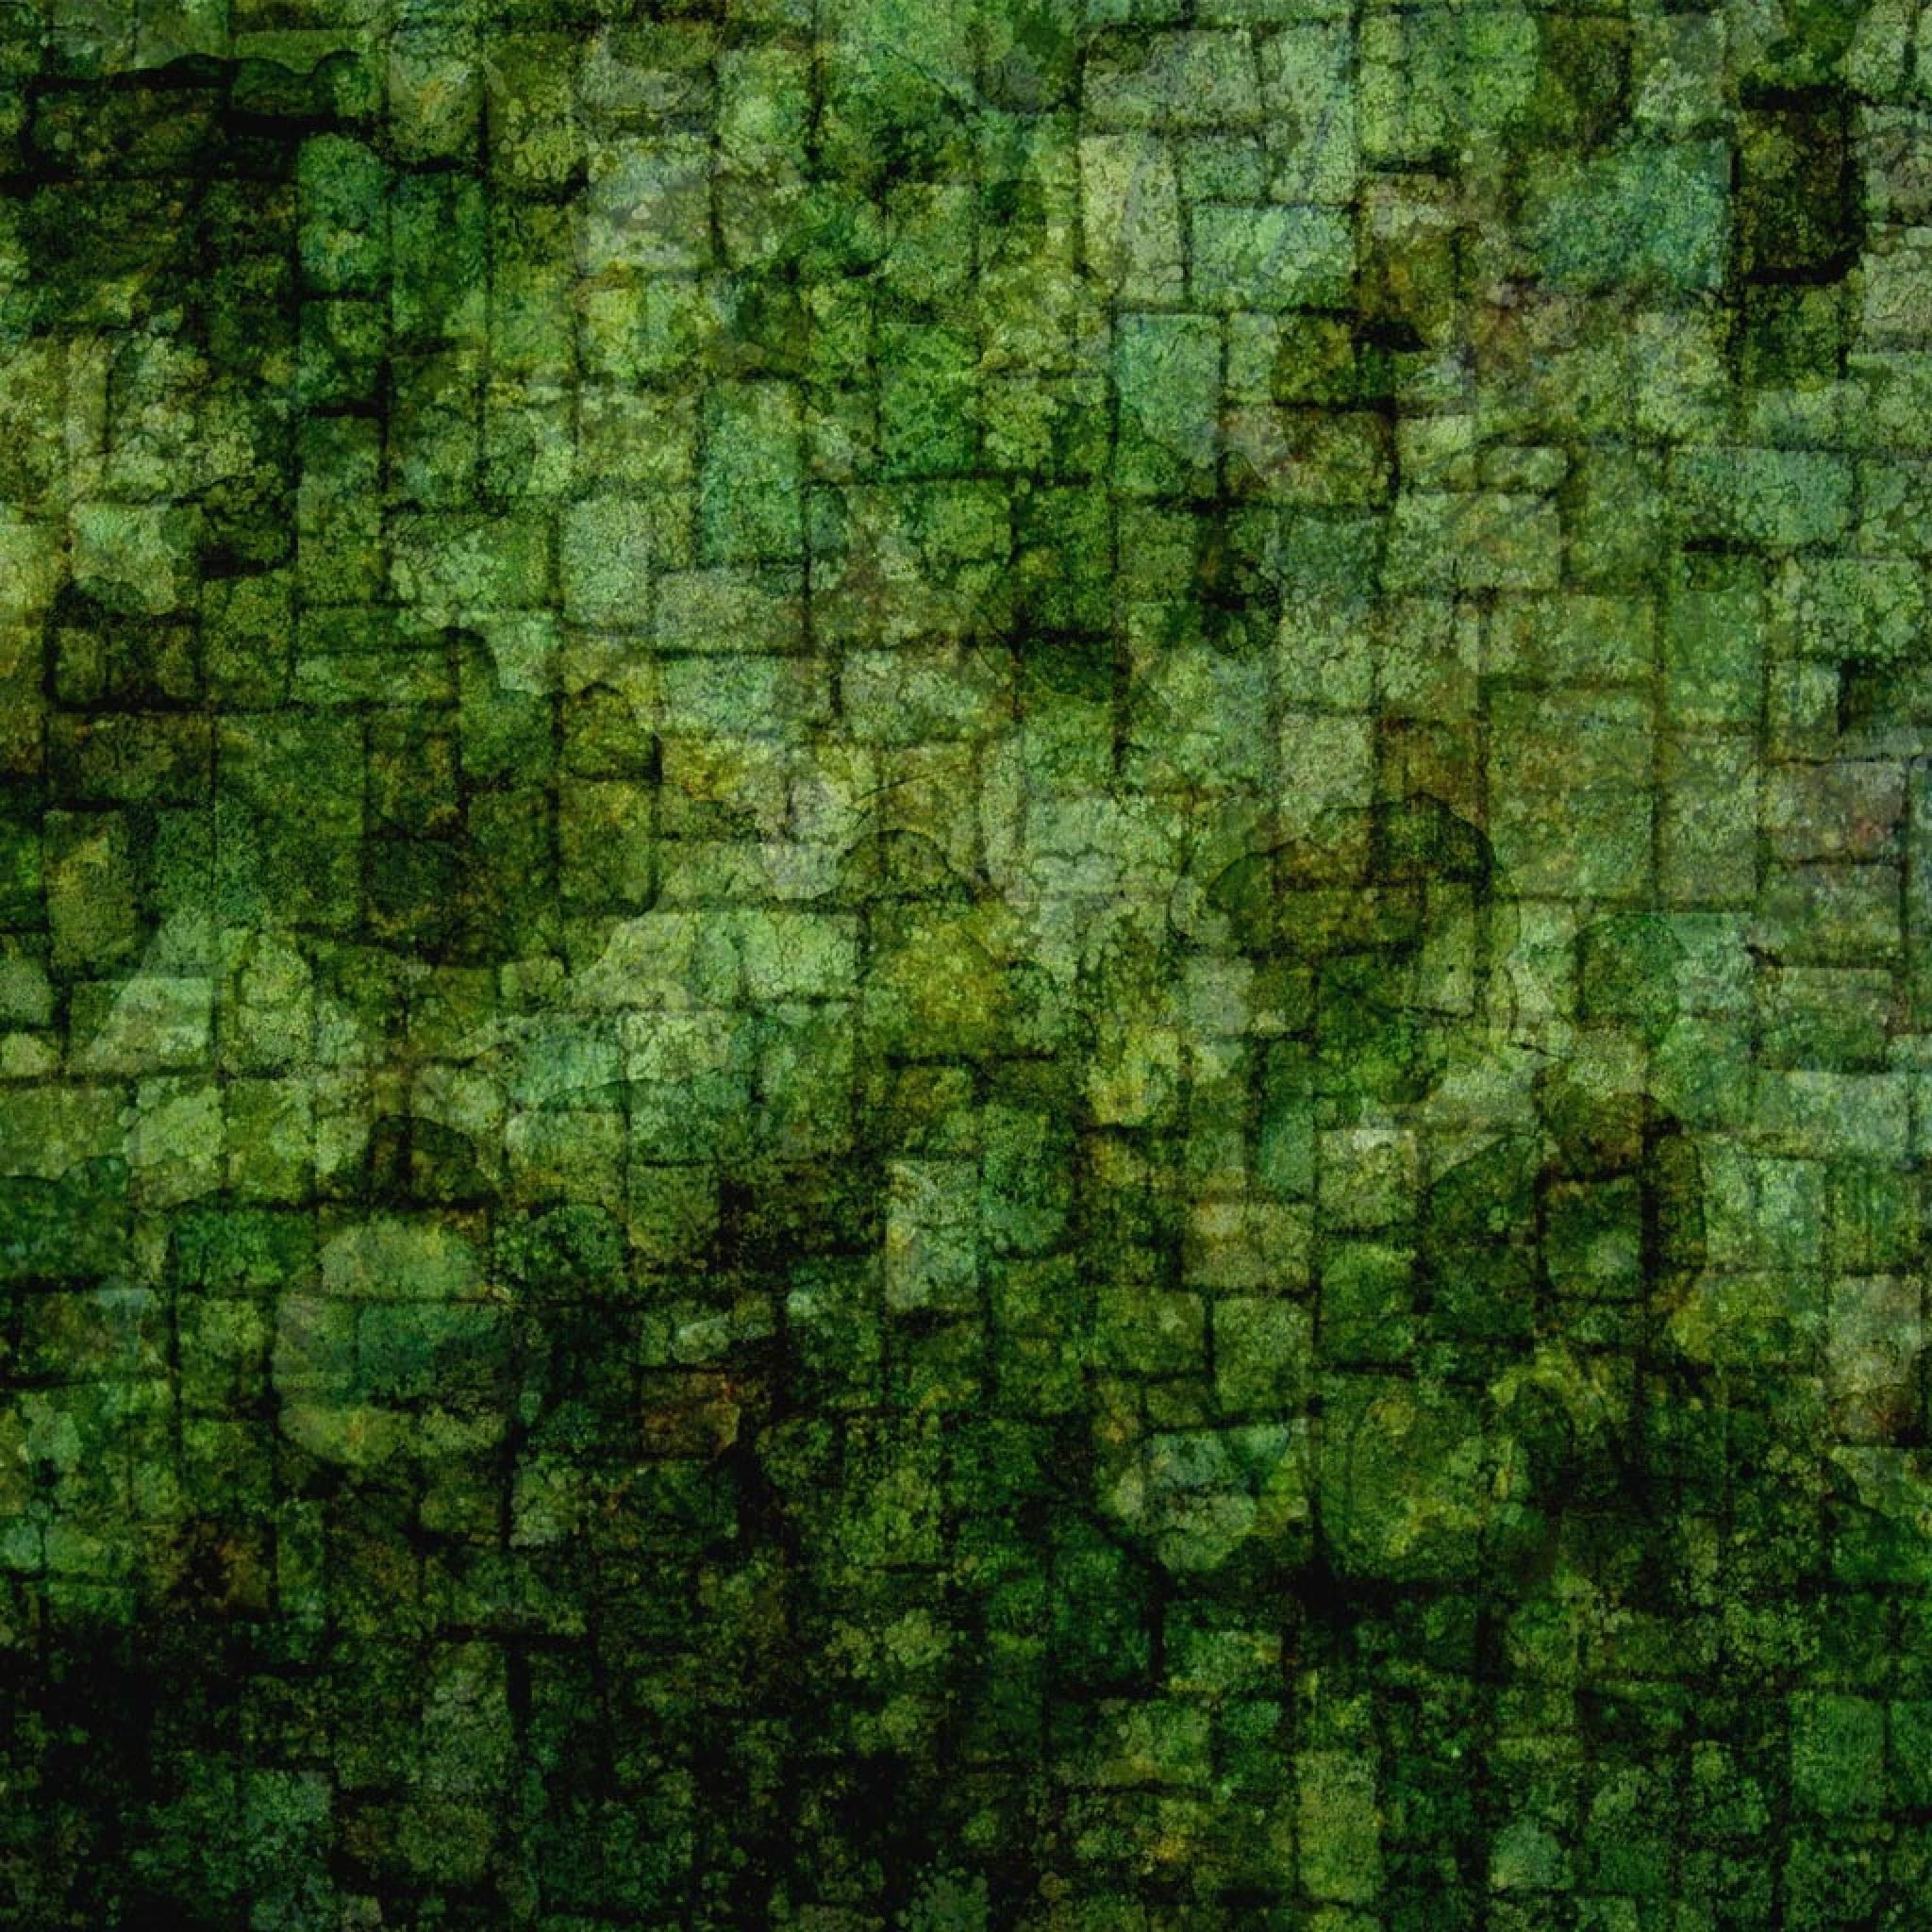 Green Texture 82482 HD Wallpaper. Opengavel.com. Green wallpaper, Green background, Green wall